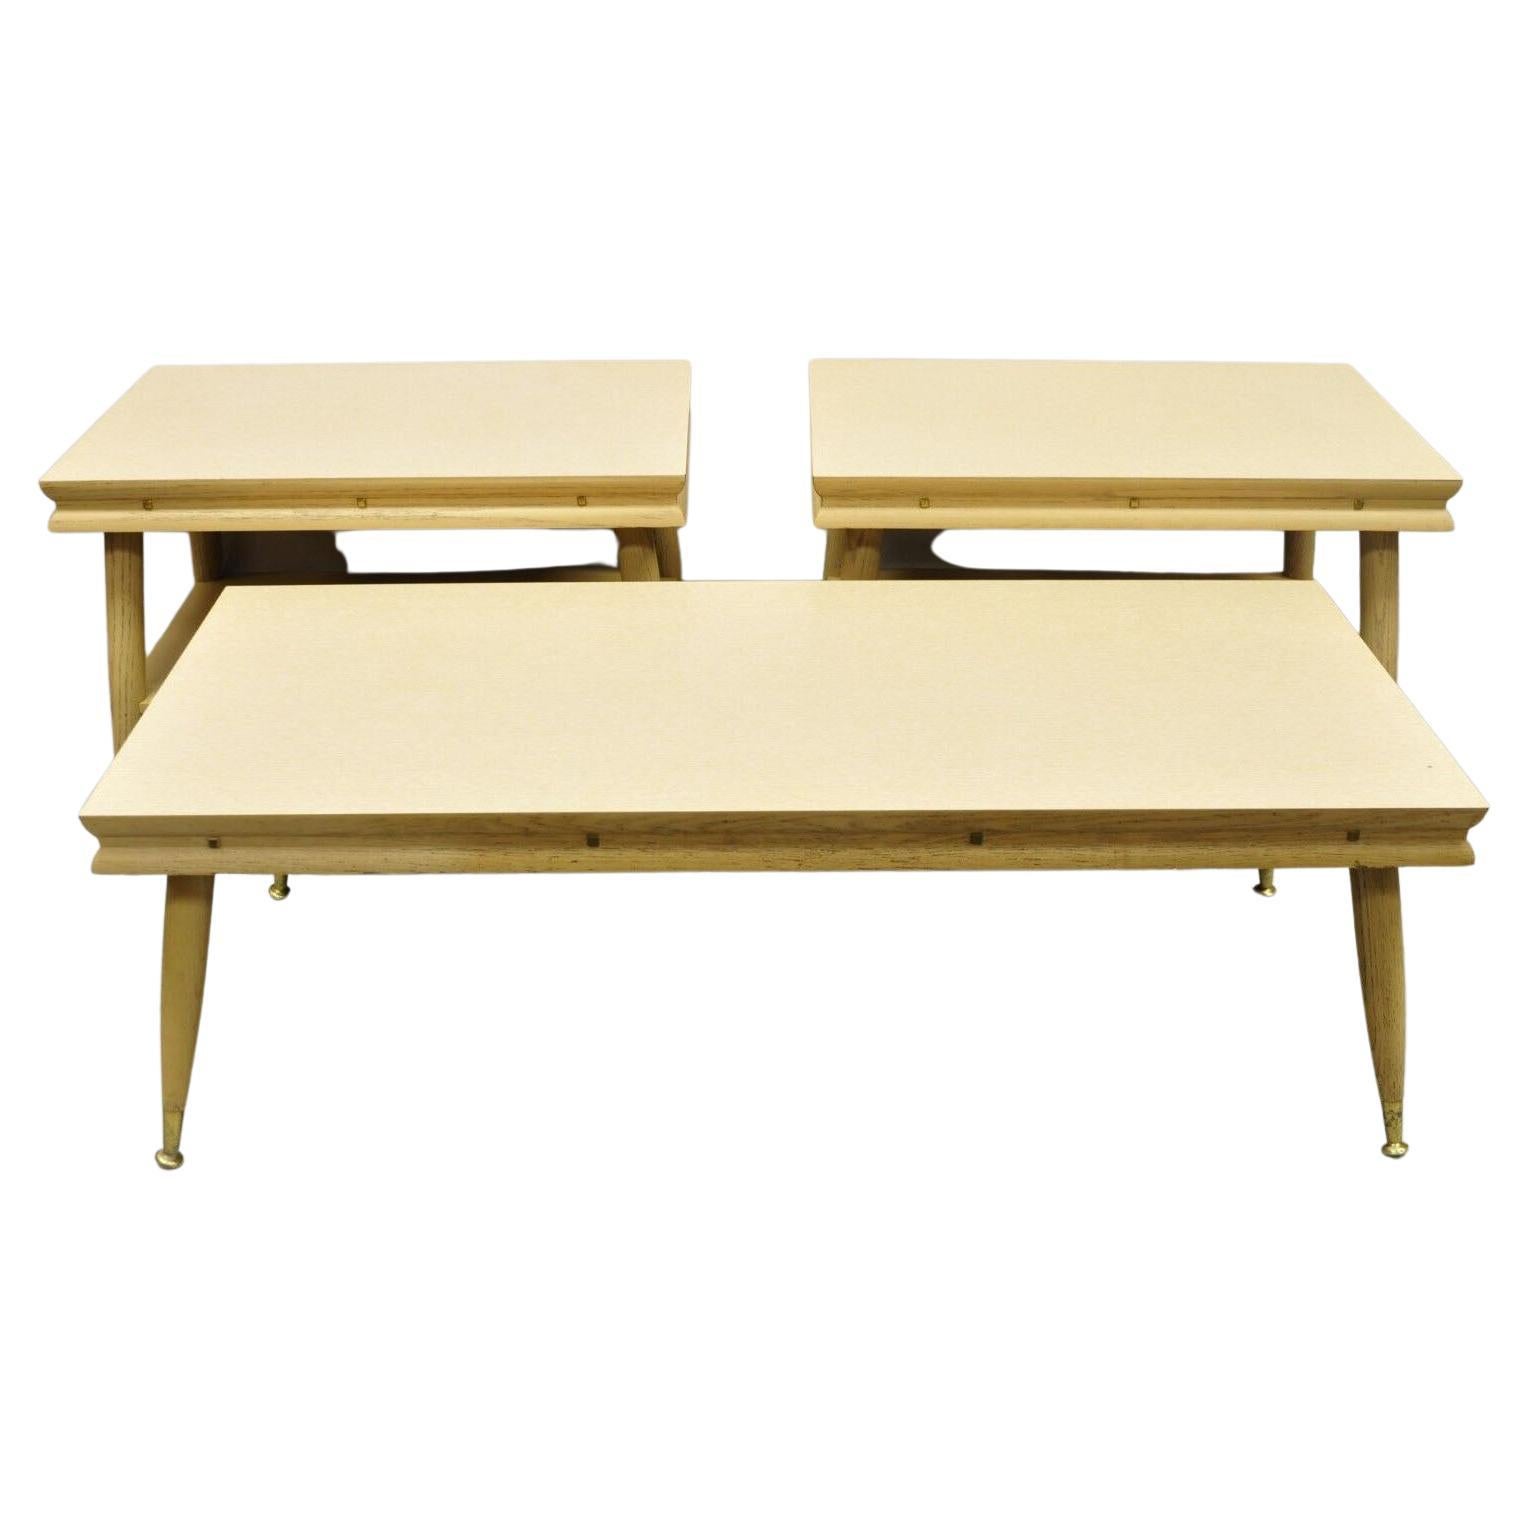 Table basse en bois et stratifié de style moderne Atomic Era, 3 Pc Set